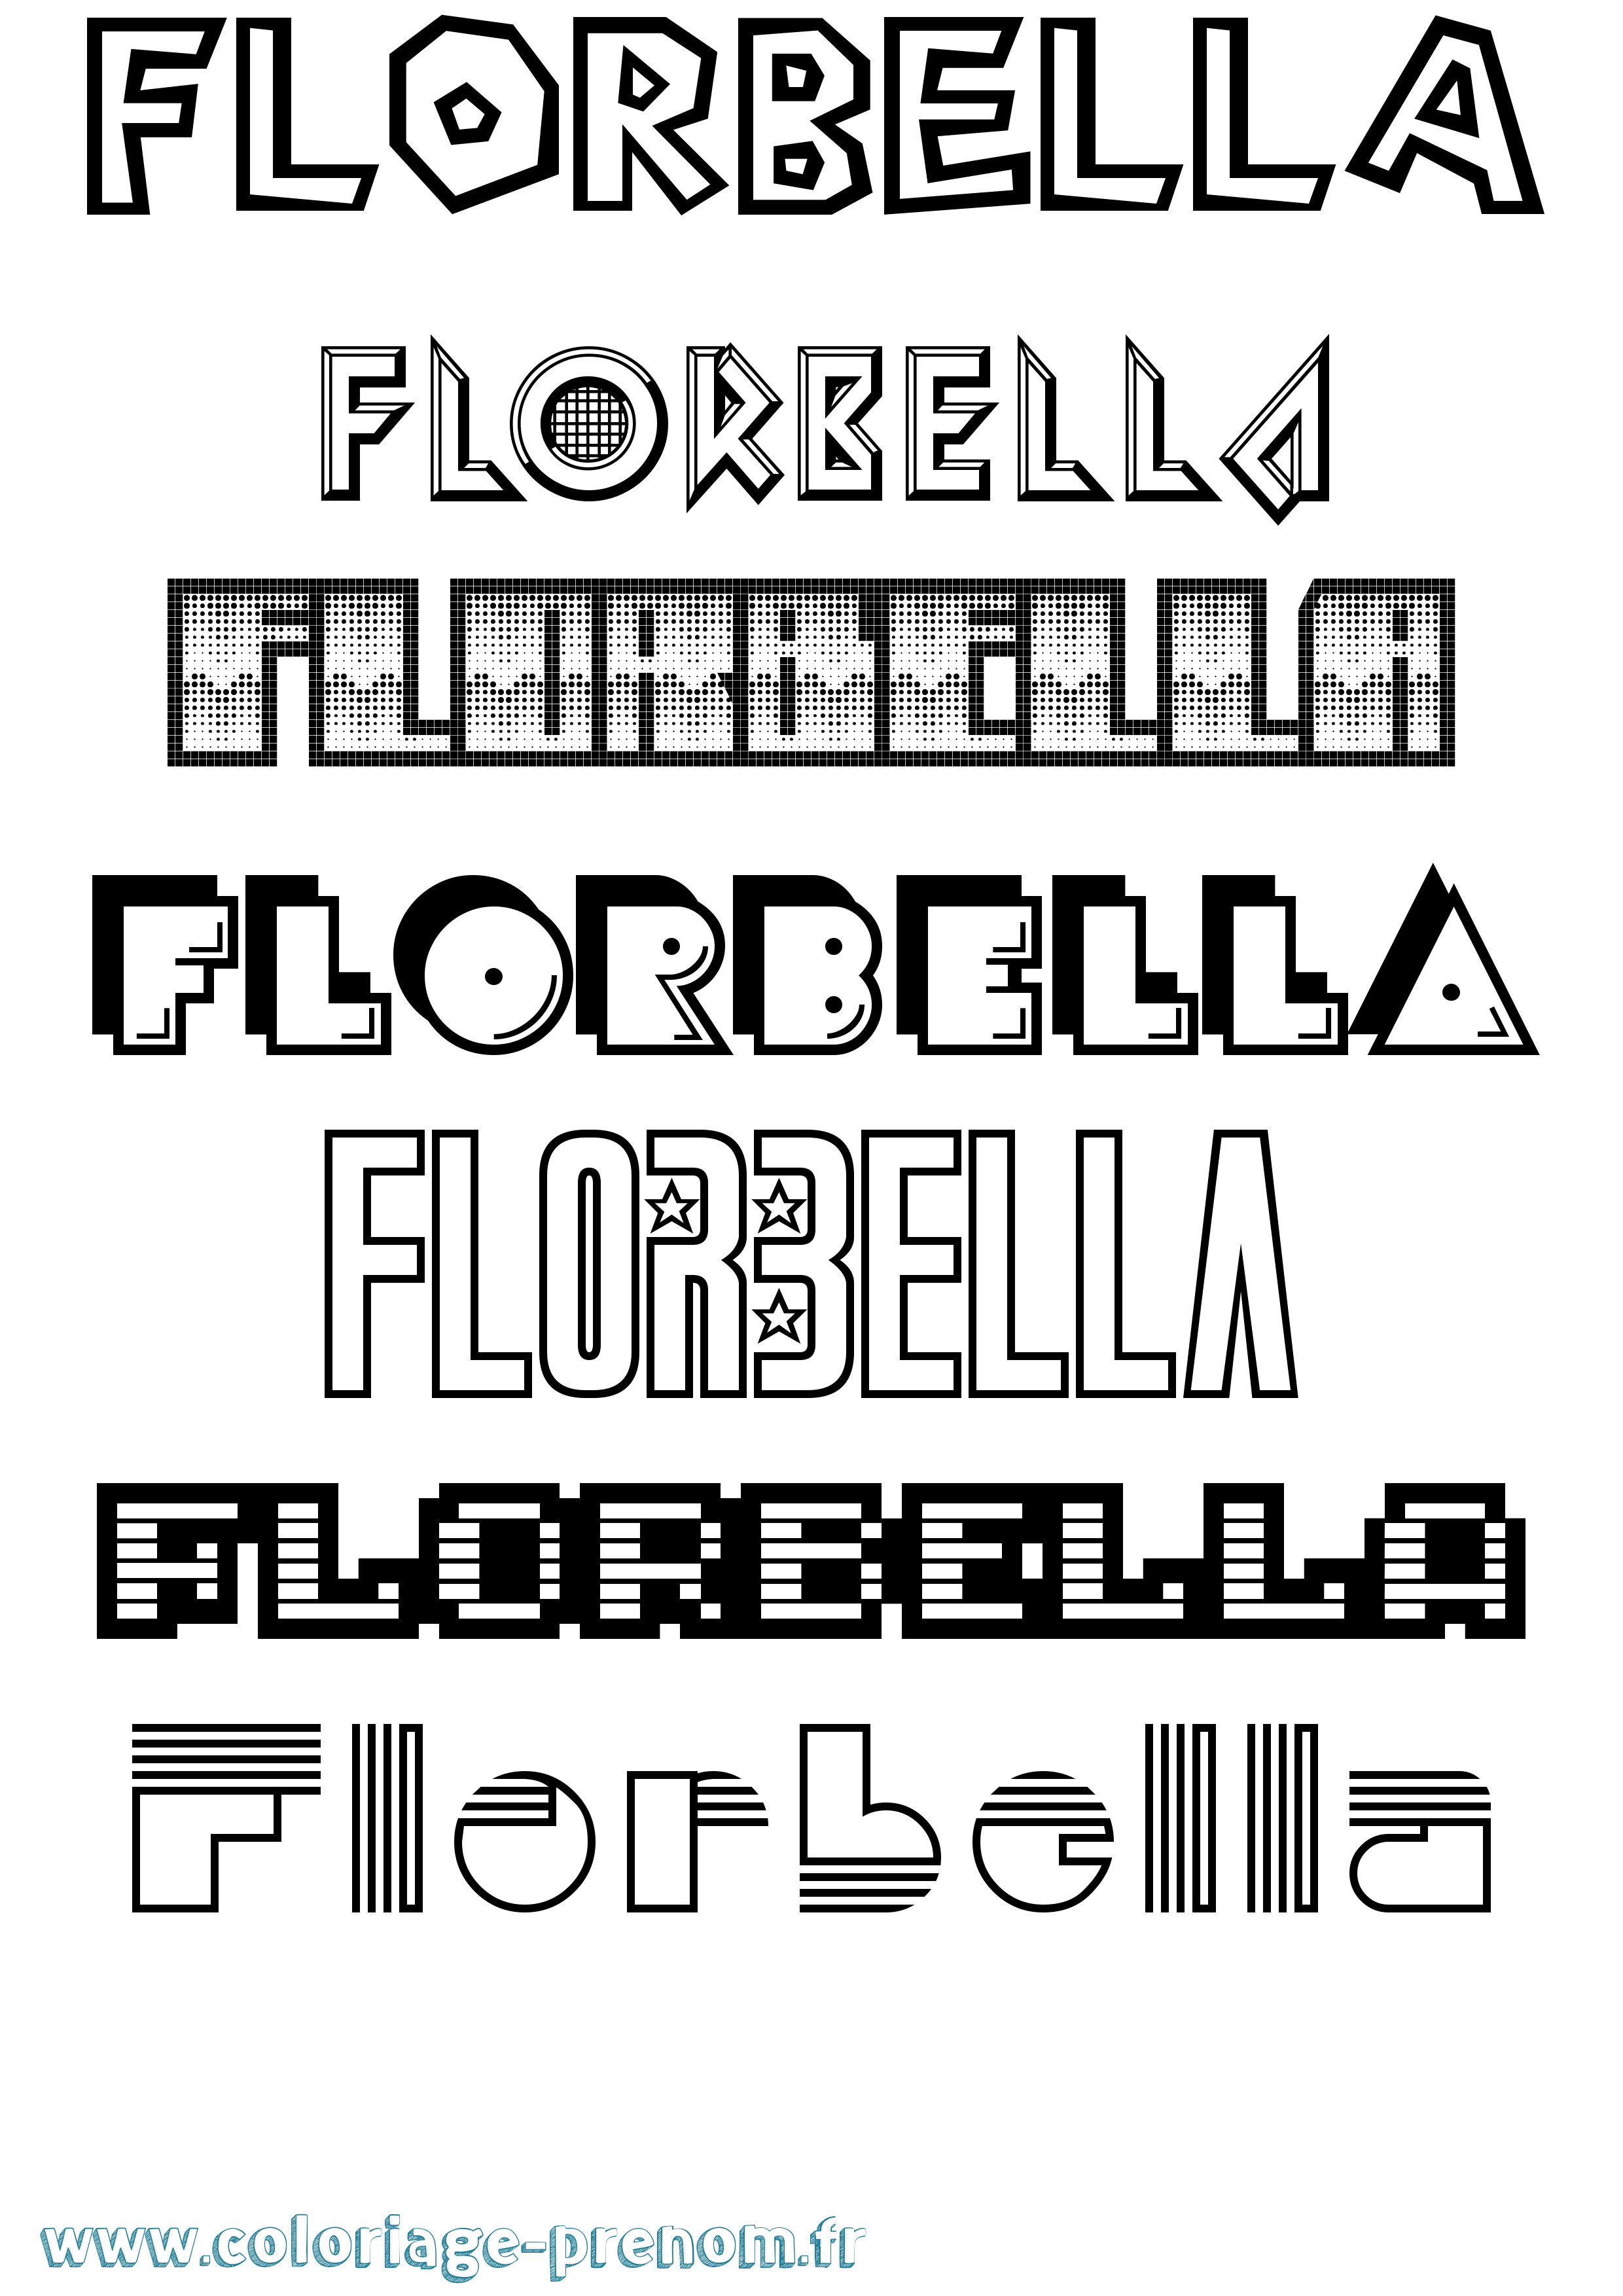 Coloriage prénom Florbella Jeux Vidéos